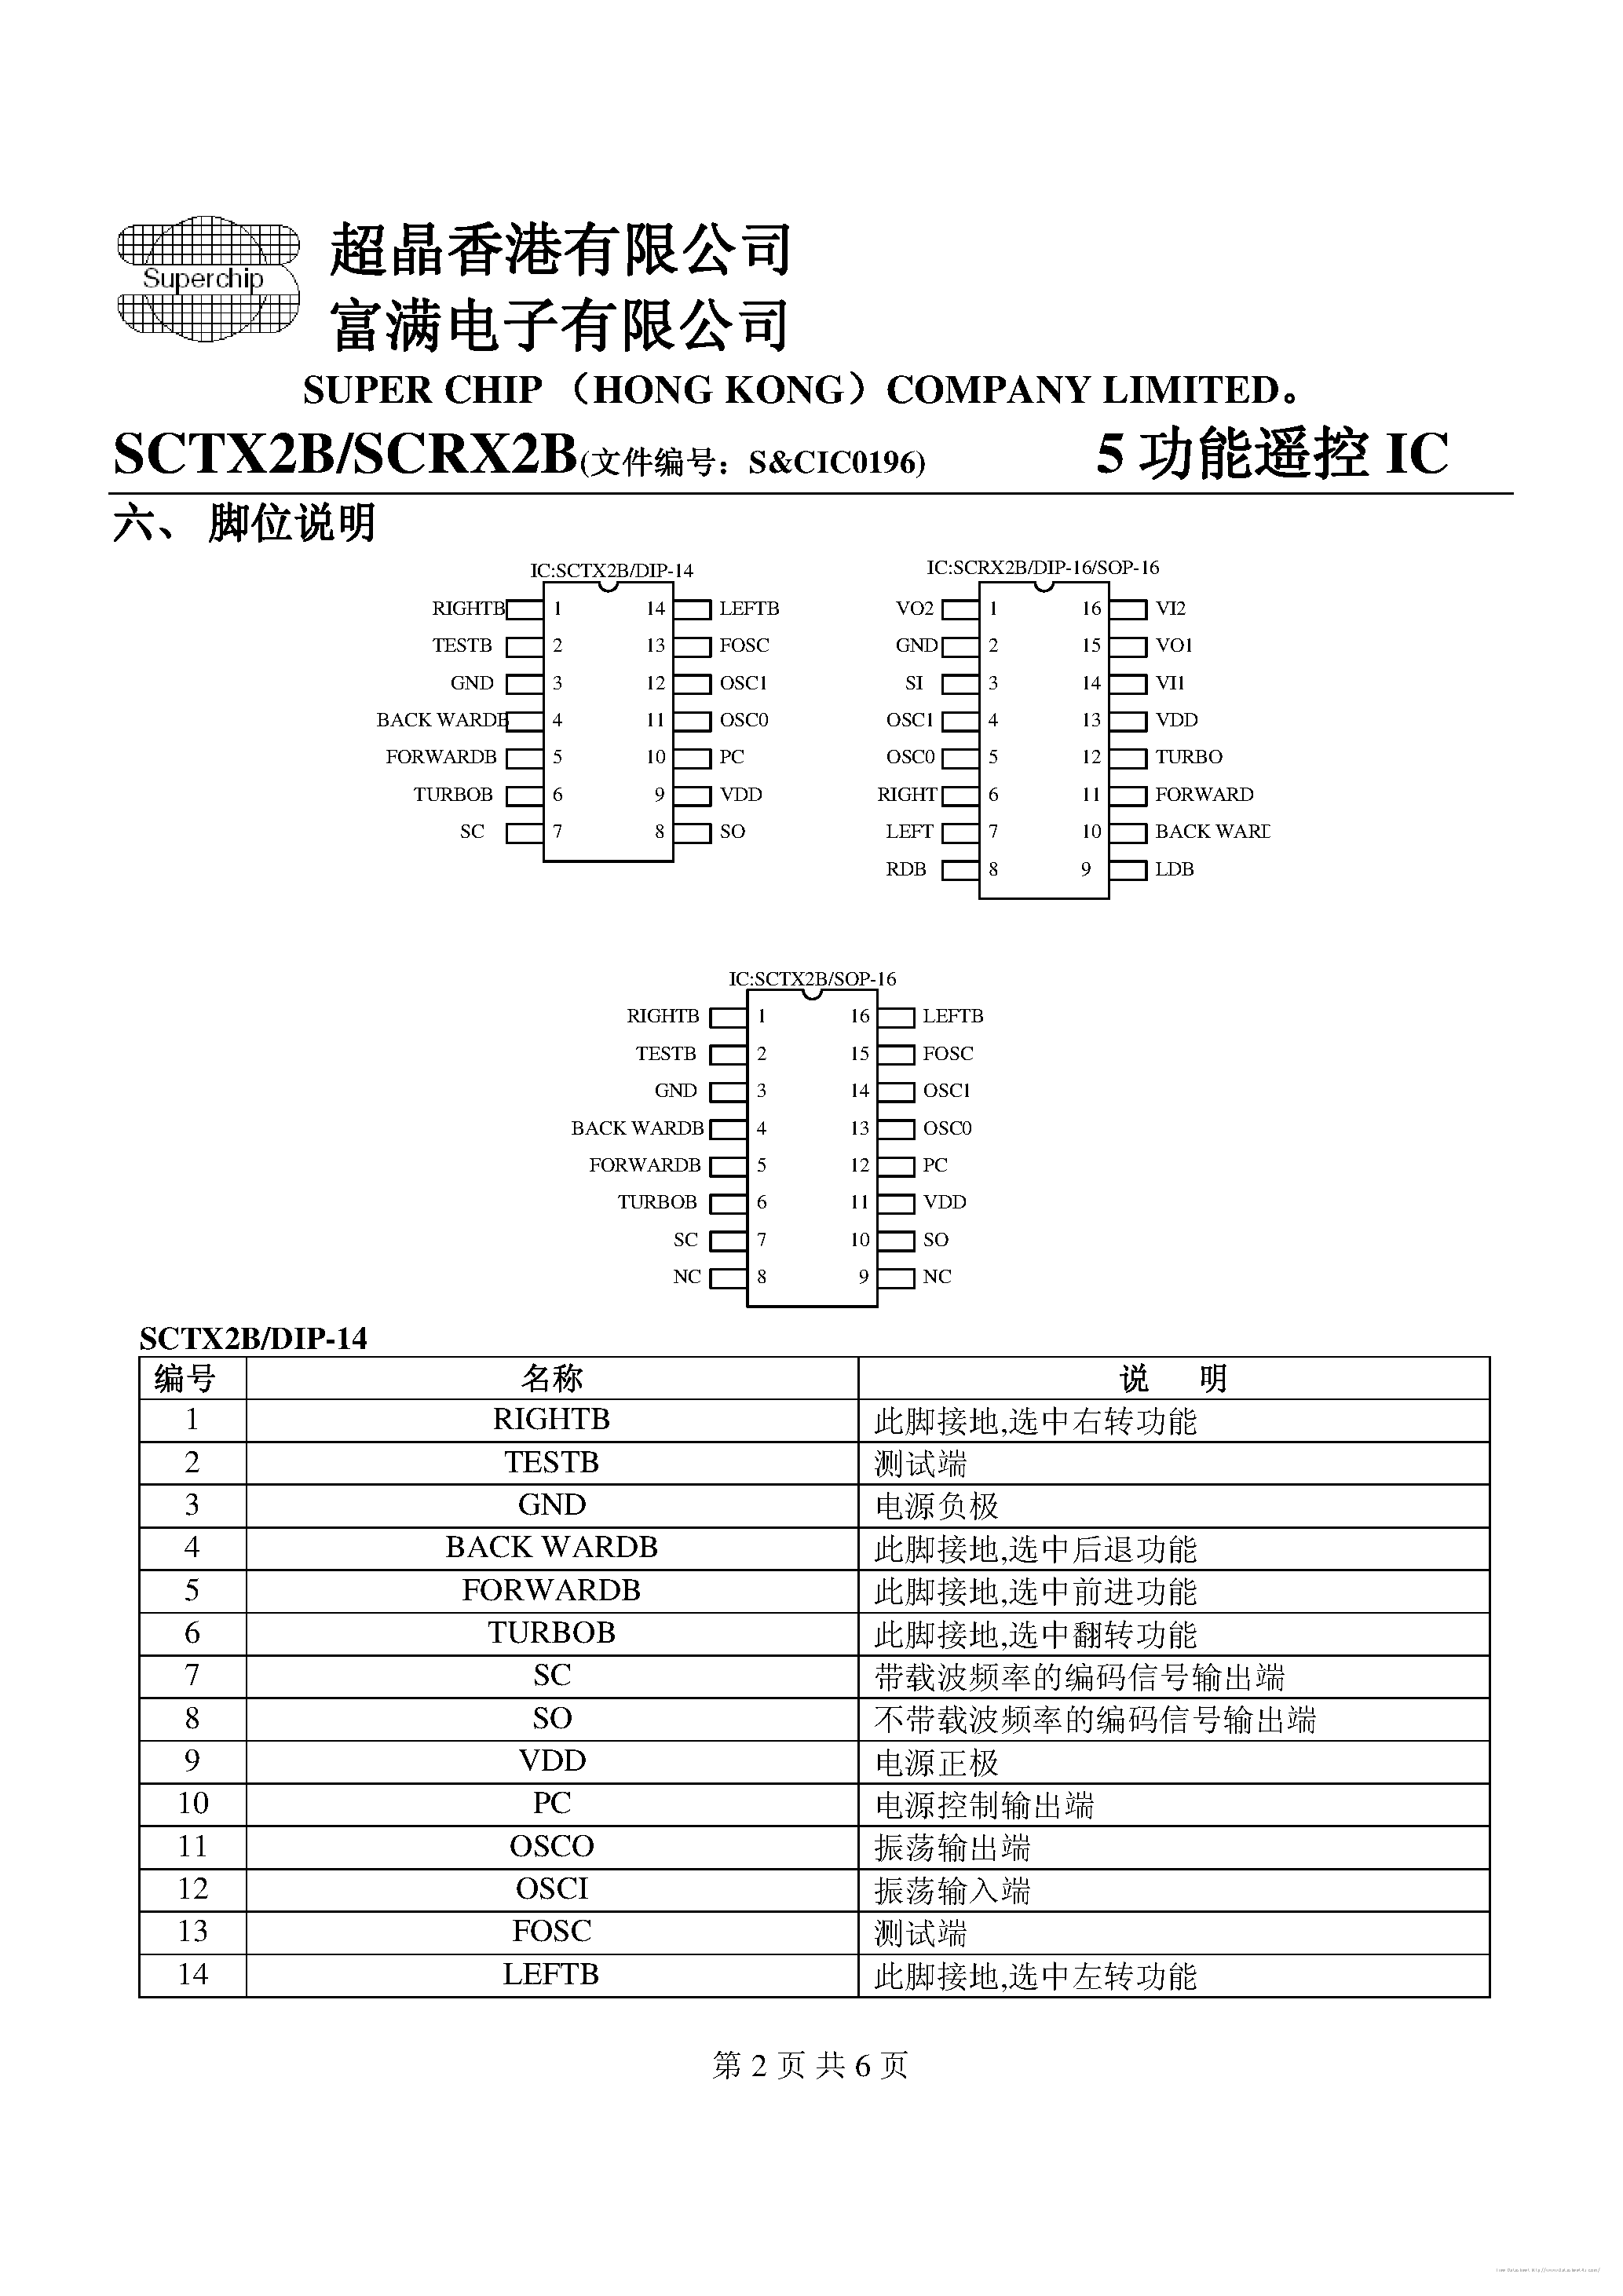 Datasheet SCTX2B - page 2